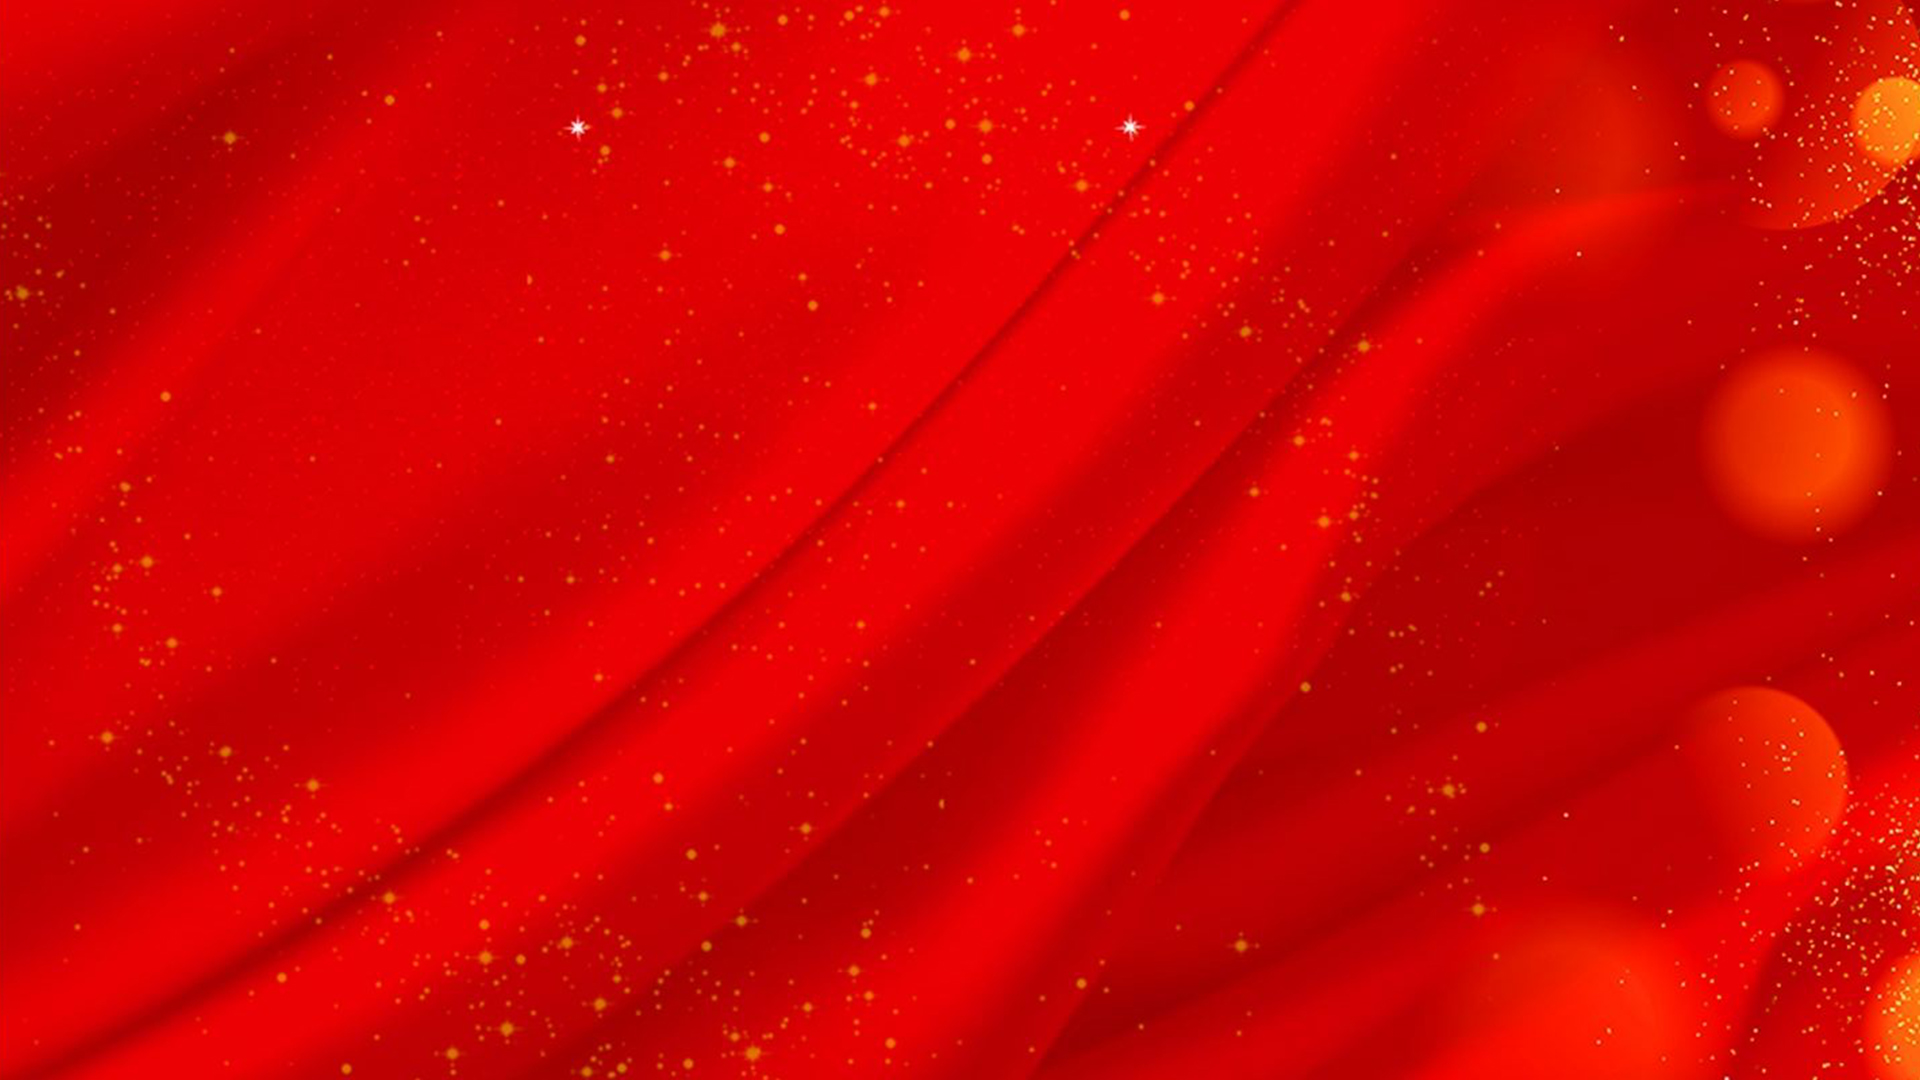 Background đỏ là một trong những tùy chọn ưa thích của các nhiếp ảnh gia khi chụp ảnh nghệ thuật. Gian phòng với đèn flash và background đỏ sẽ giúp tạo ra không khí thật trang trọng và lãng mạn. Xem hình ảnh liên quan để cảm nhận vẻ đẹp độc đáo của background đỏ trong nhiếp ảnh.